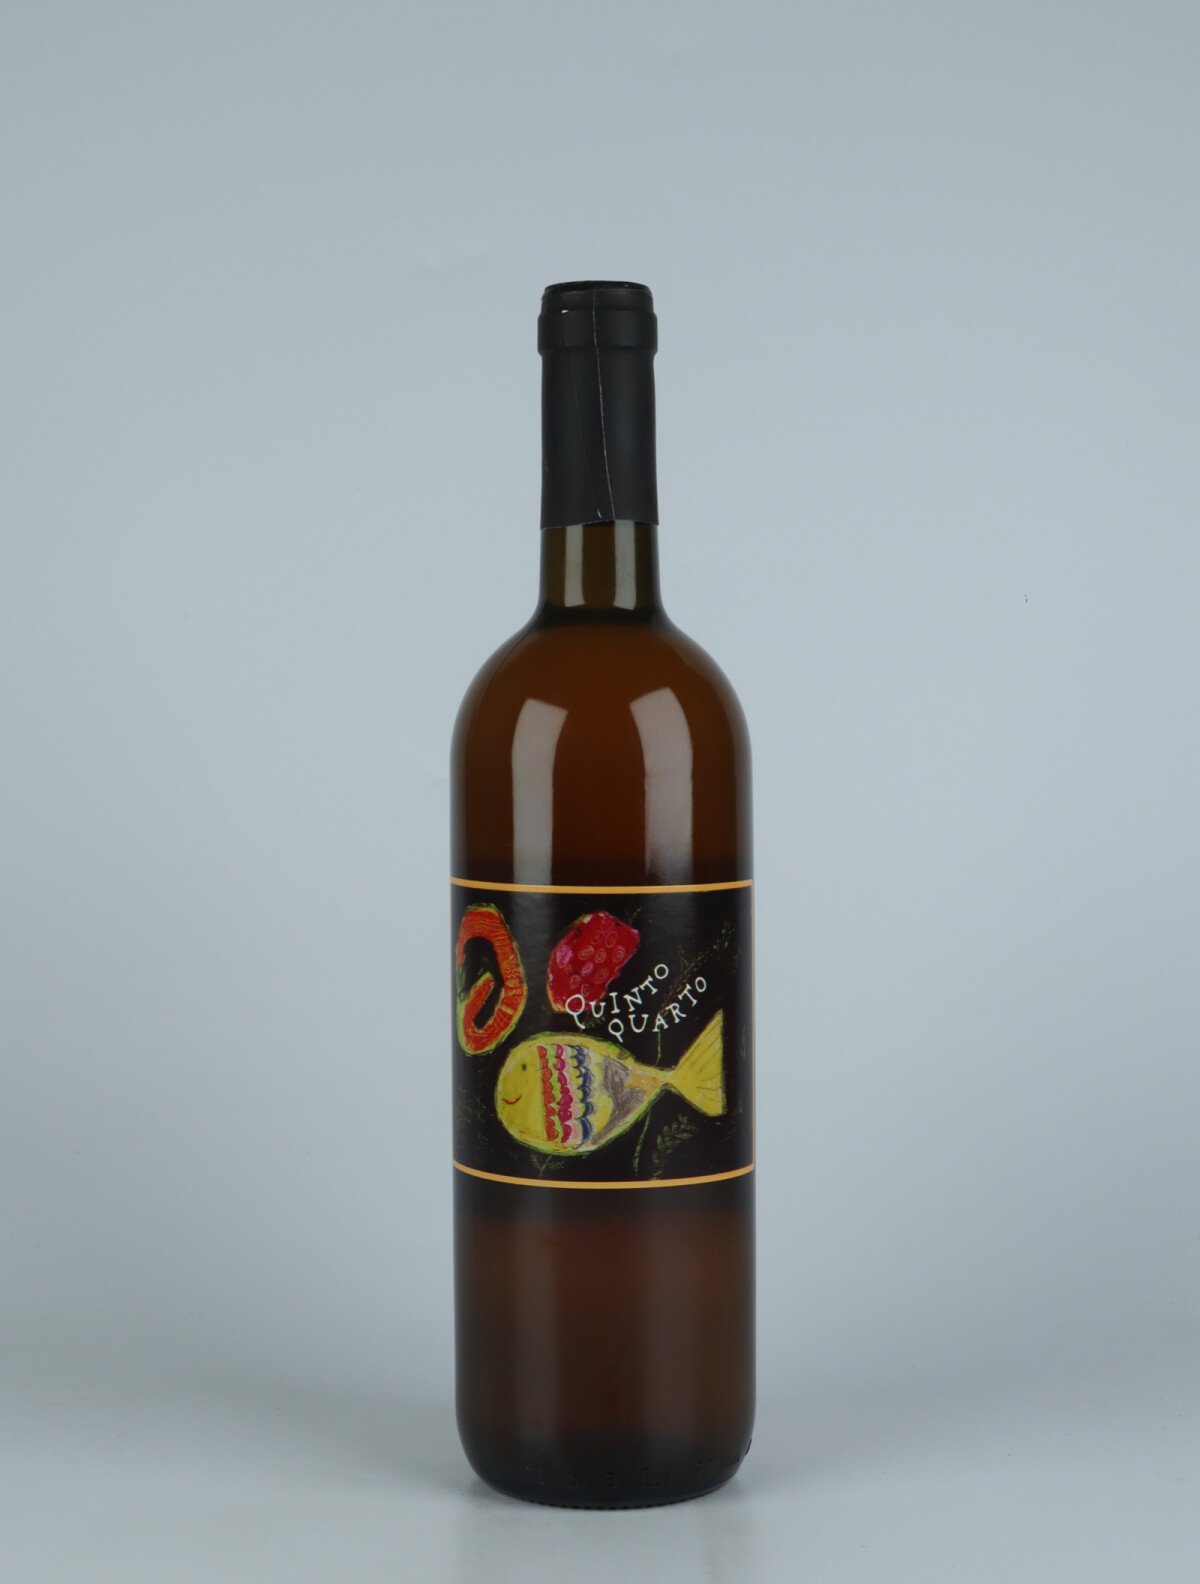 A bottle N.V. Quinto Quarto Vino Bianco Orange wine from Franco Terpin, Friuli in Italy